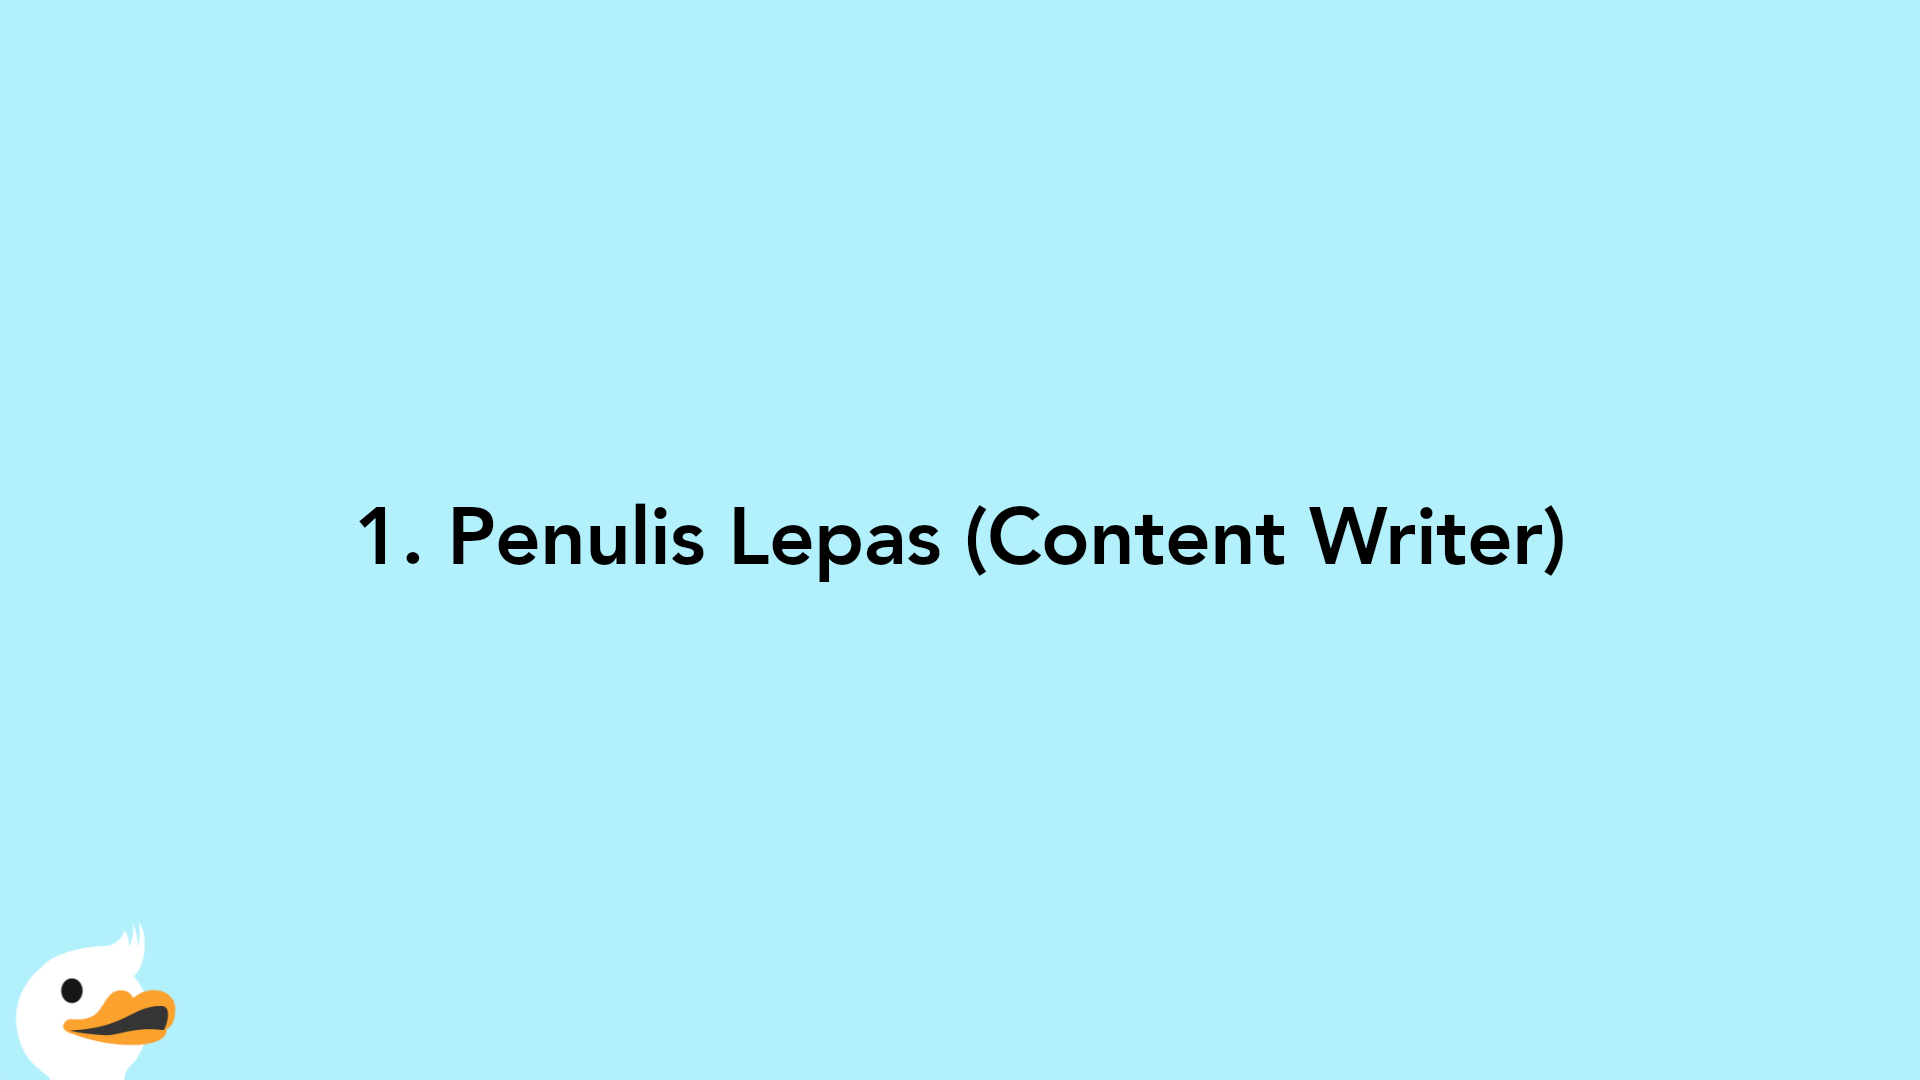 1. Penulis Lepas (Content Writer)